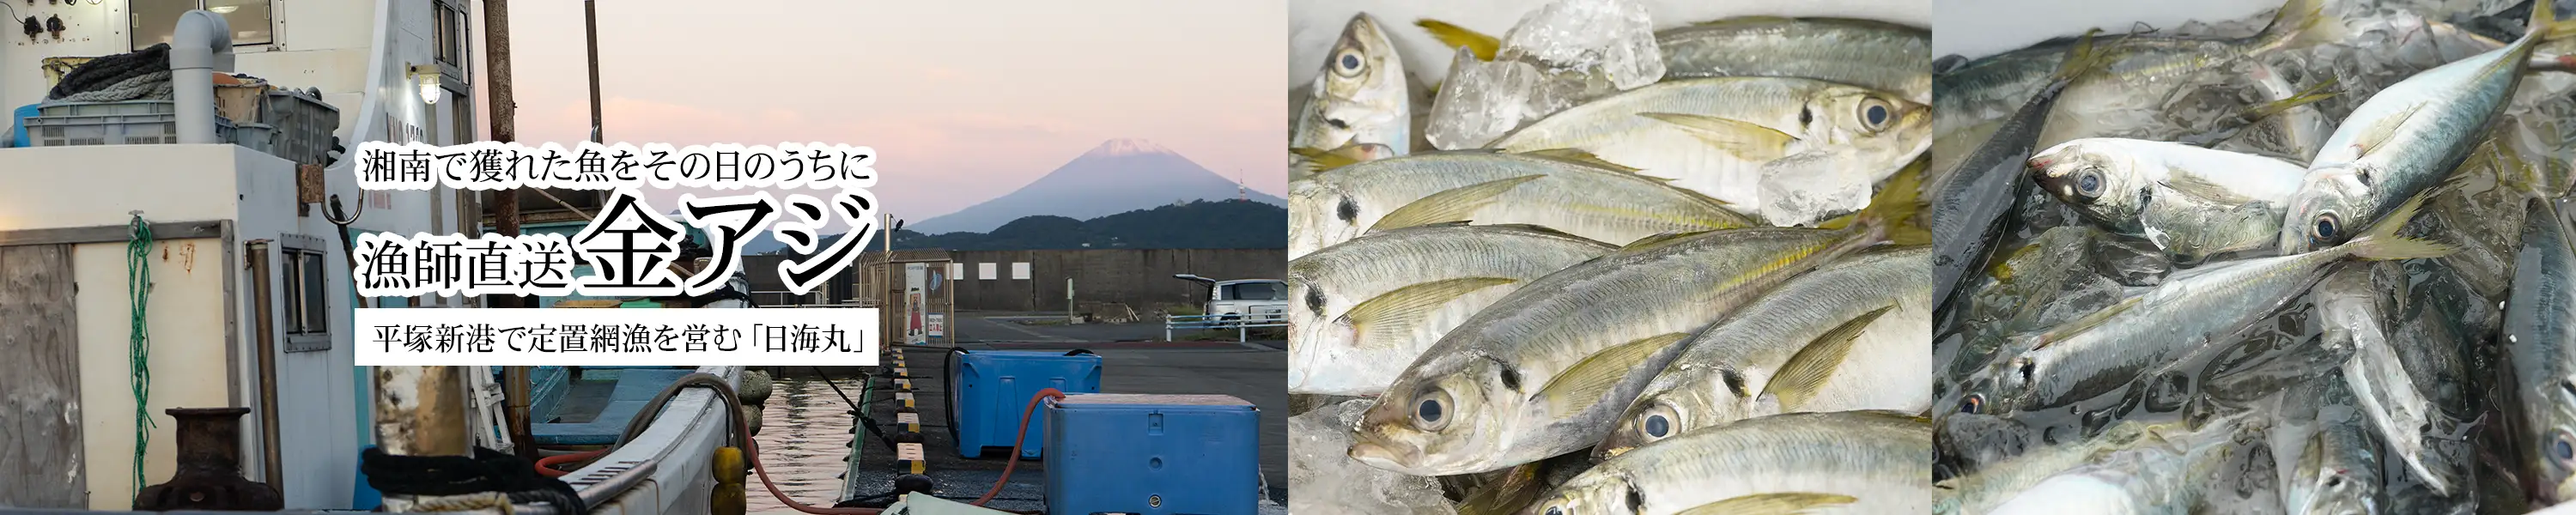 湘南で獲れた魚をその日のうちに「漁師直送 金アジ」平塚新港で定置網漁を営む日海丸